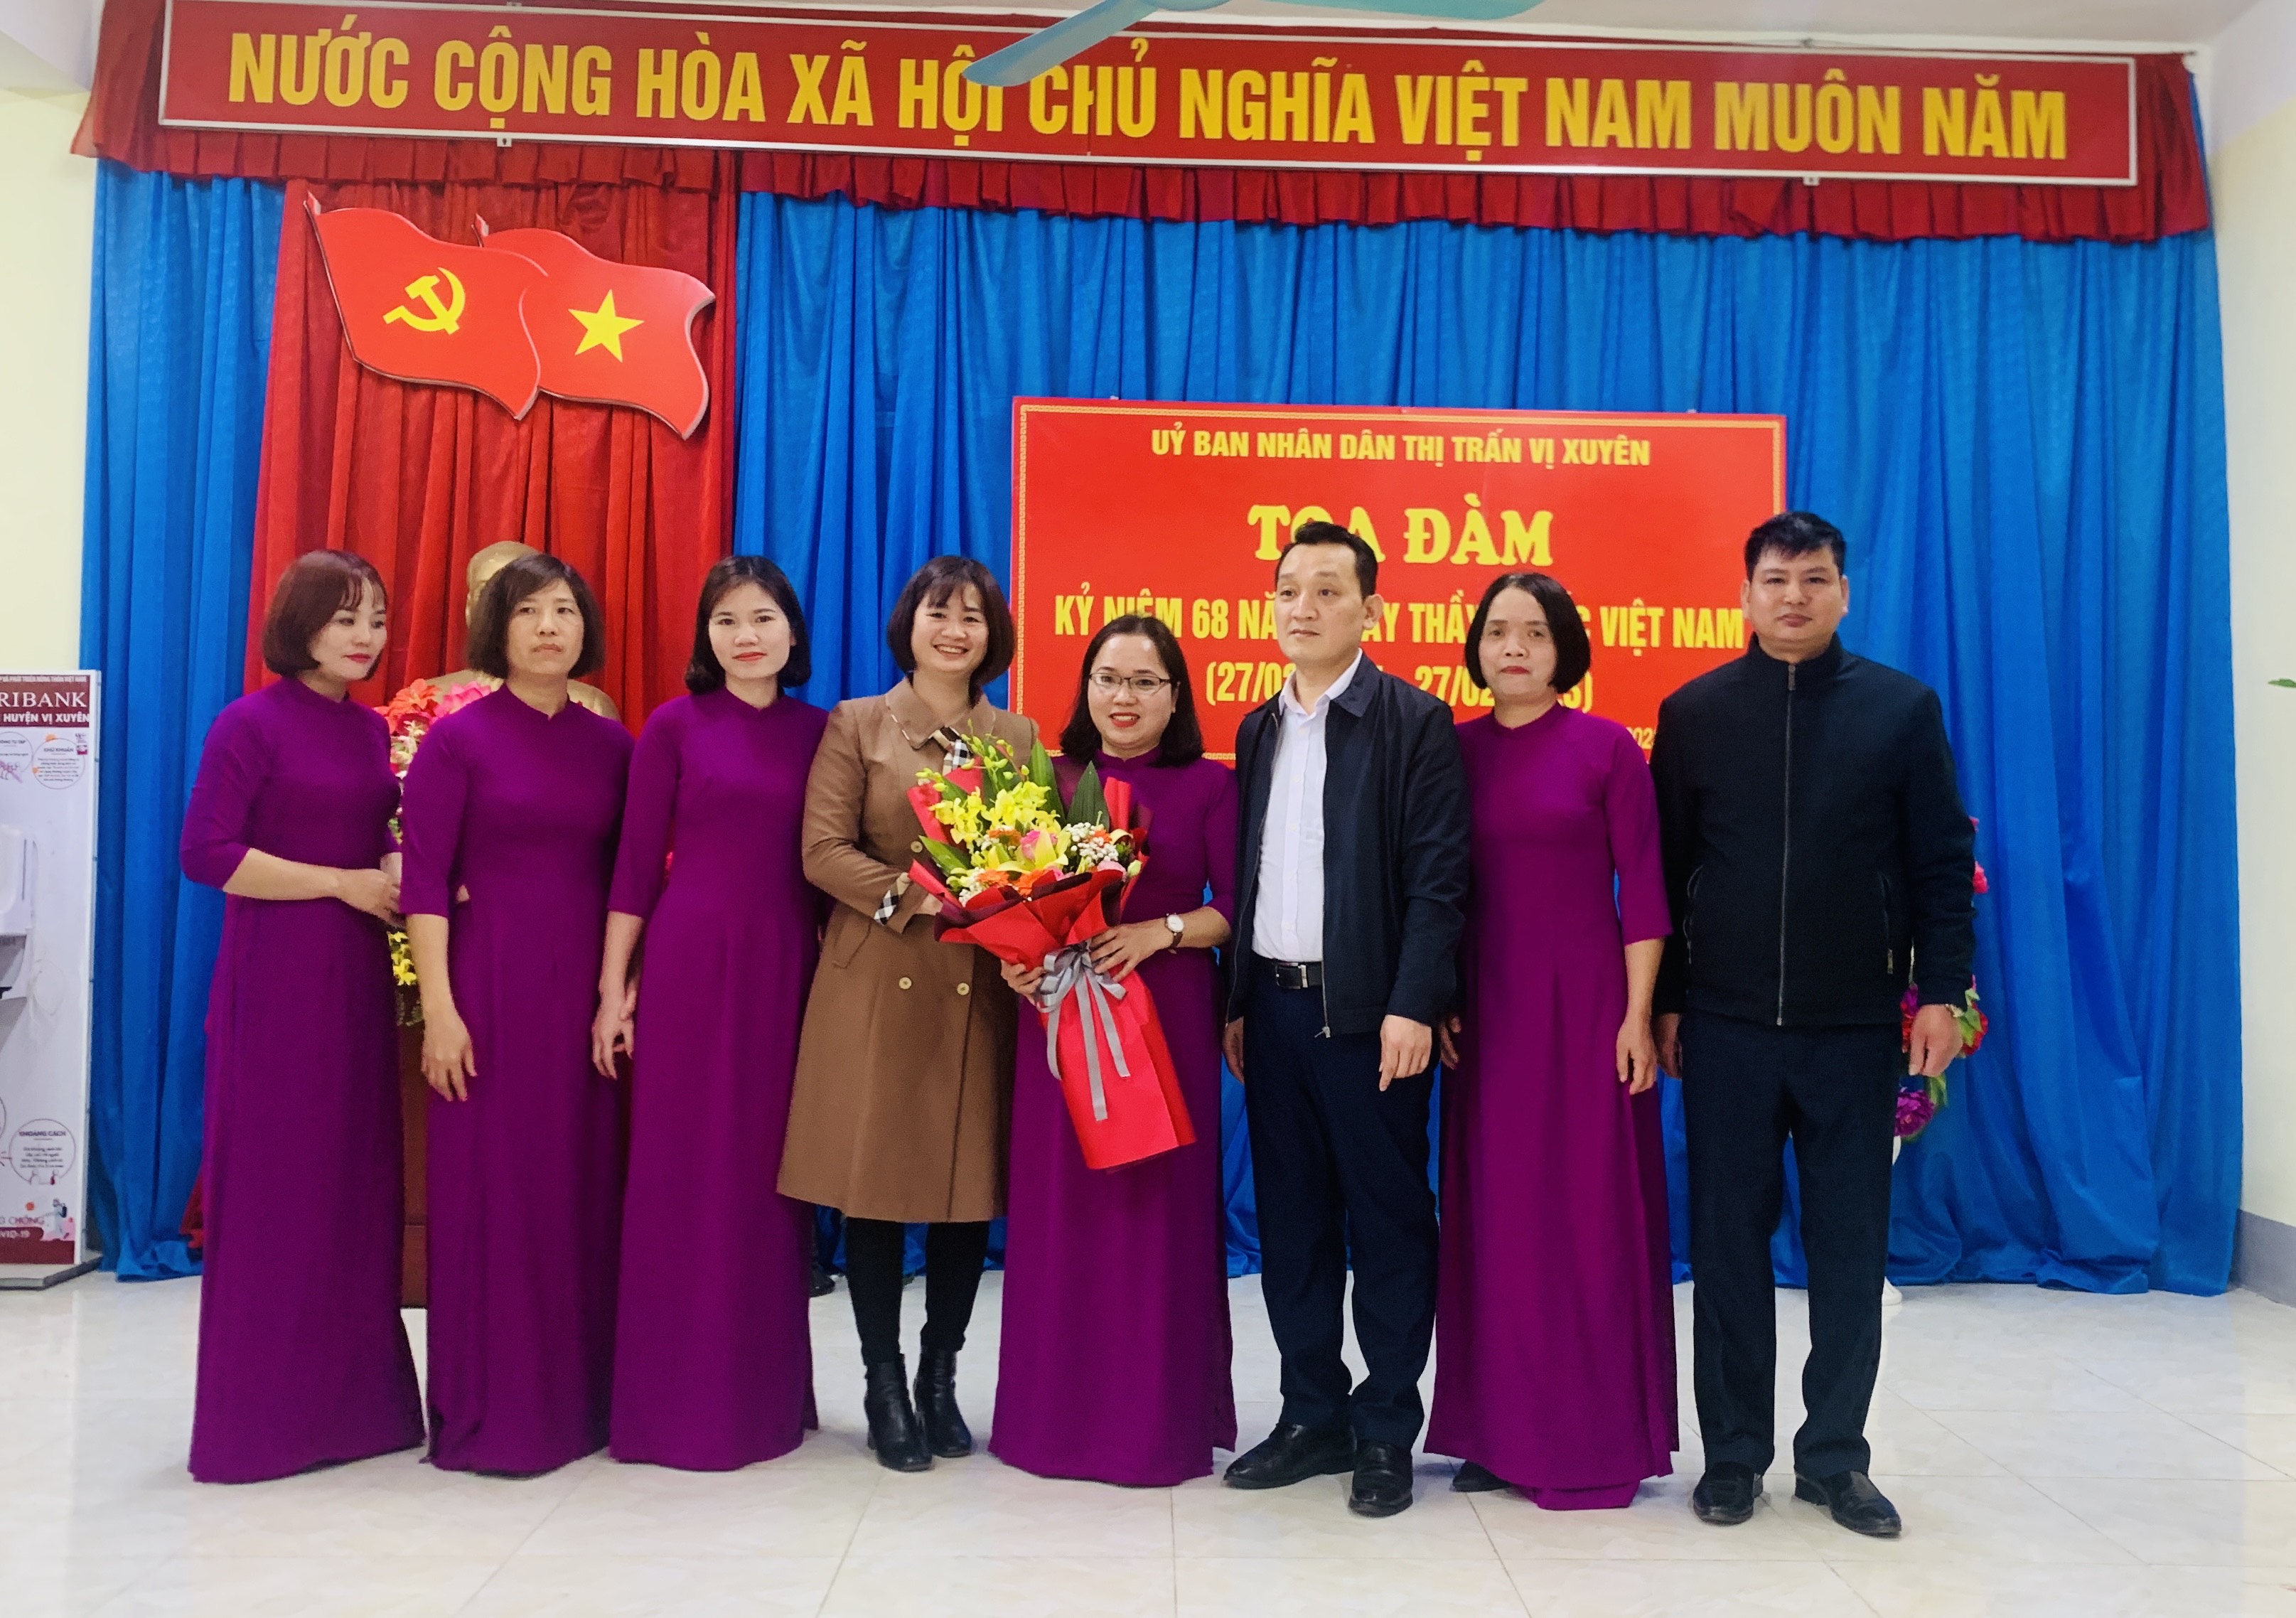 Thị trấn Vị Xuyên tọa đàm kỷ niệm 68 năm Ngày thầy thuốc Việt Nam